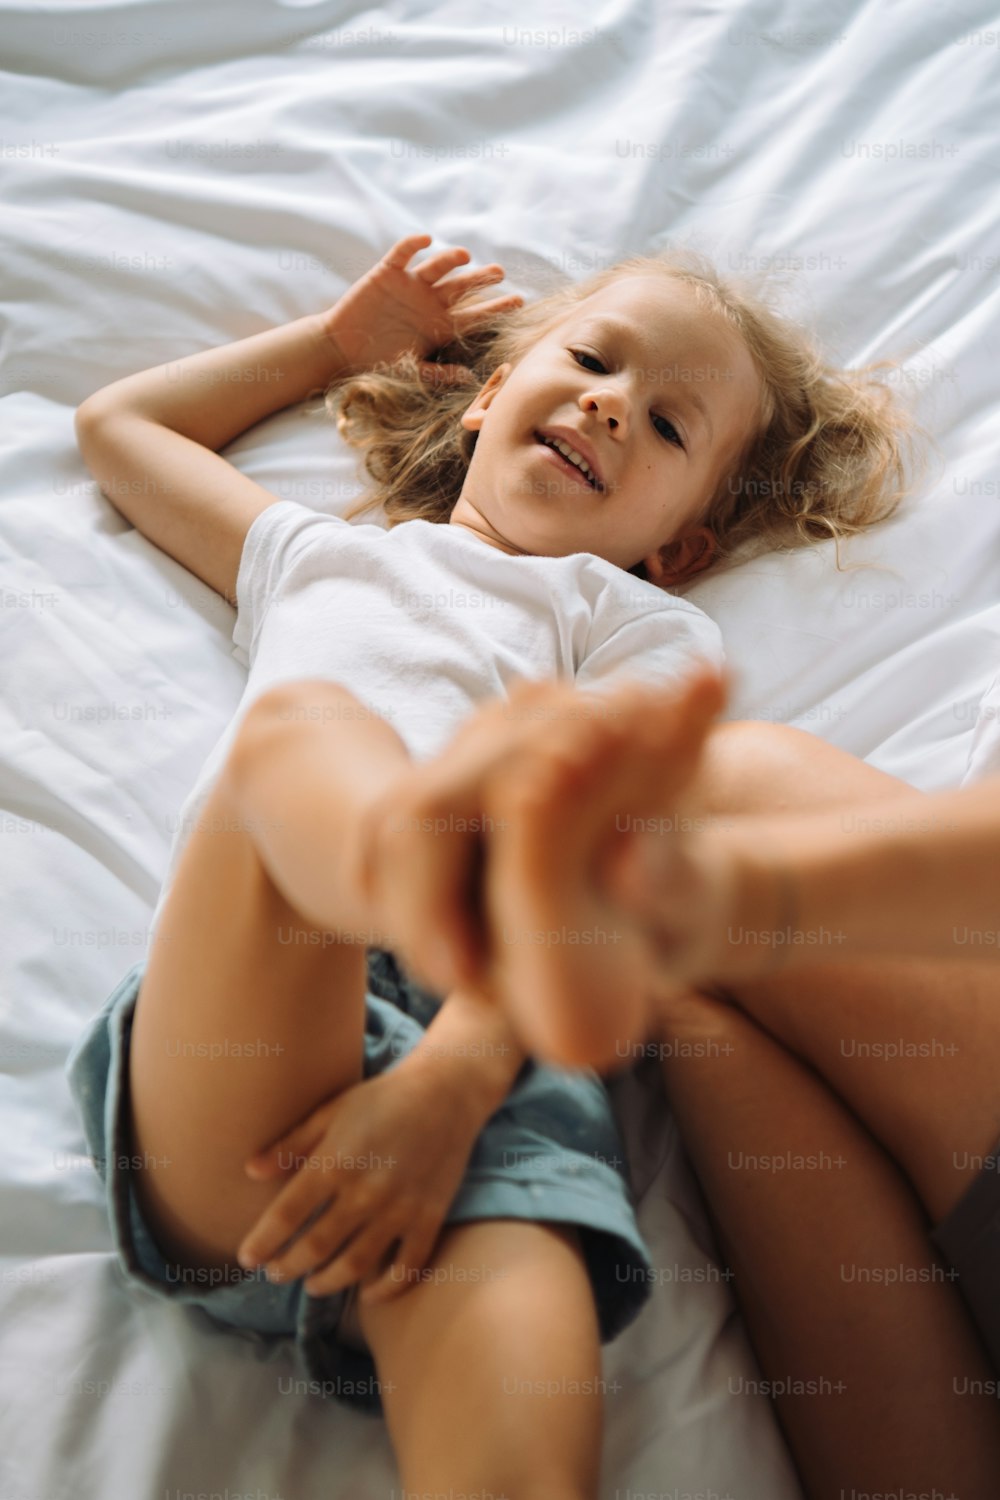 하얀 침대 위에 누워 있는 어린 소녀